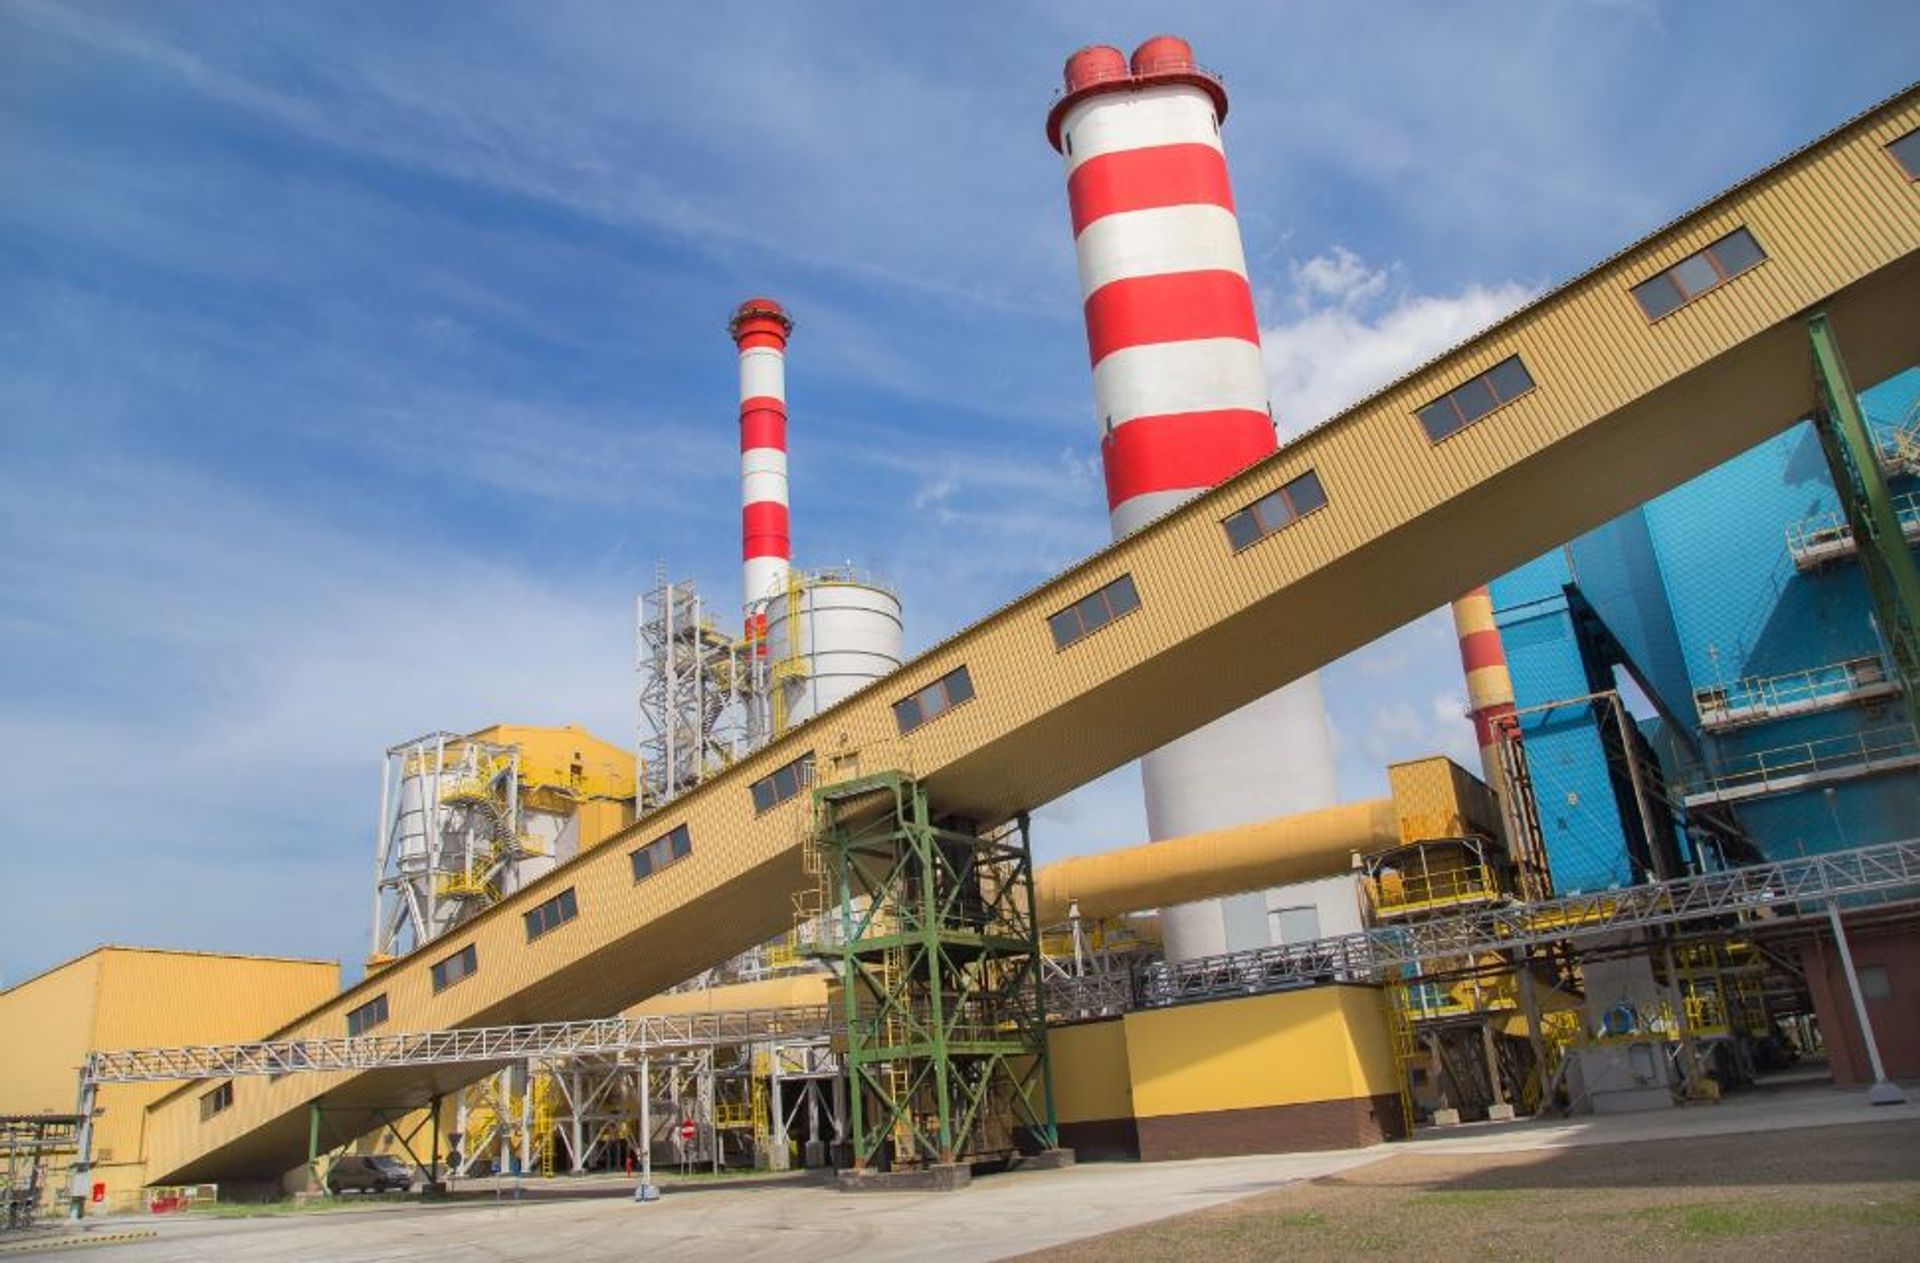 Elektrociepłownia PGE Energia Ciepła w Bydgoszczy buduje nowe kogeneracyjne źródło ciepła